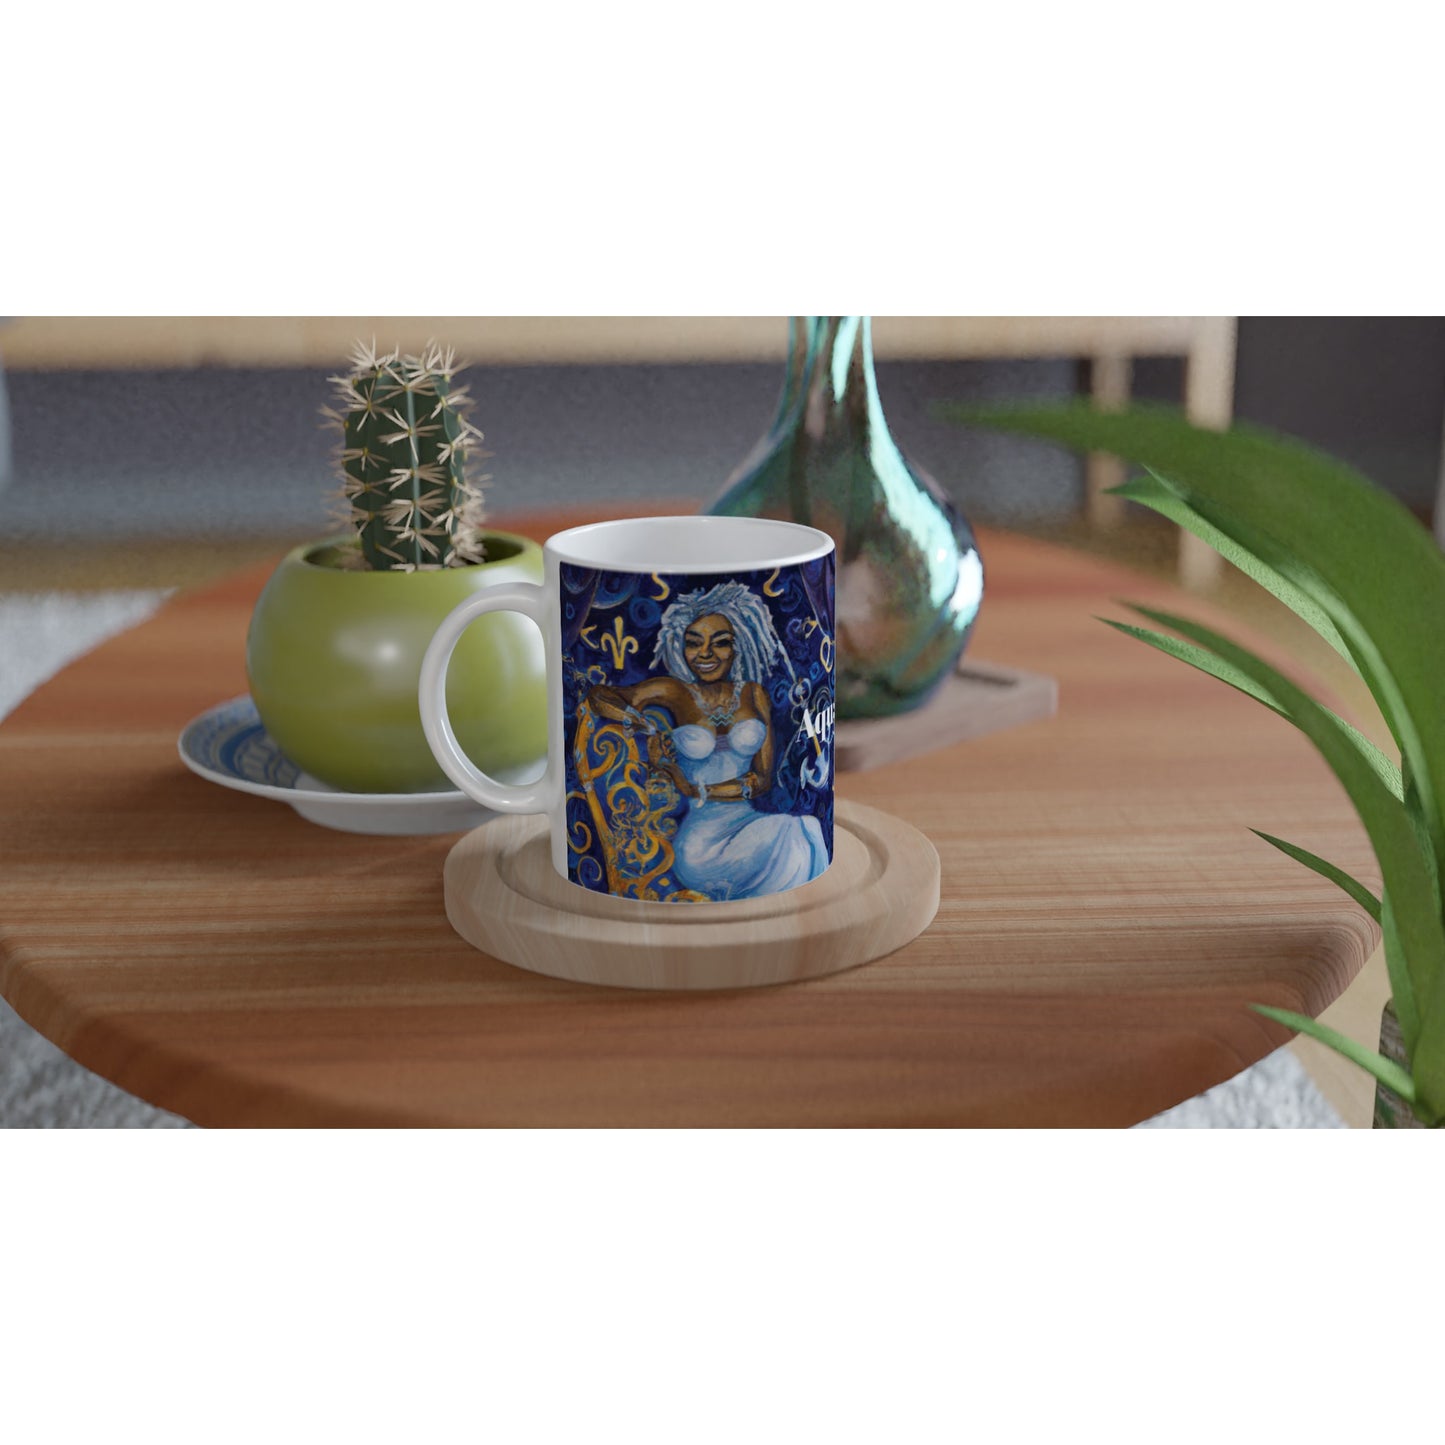 Queenie Aquarius Ceramic Mug -11oz